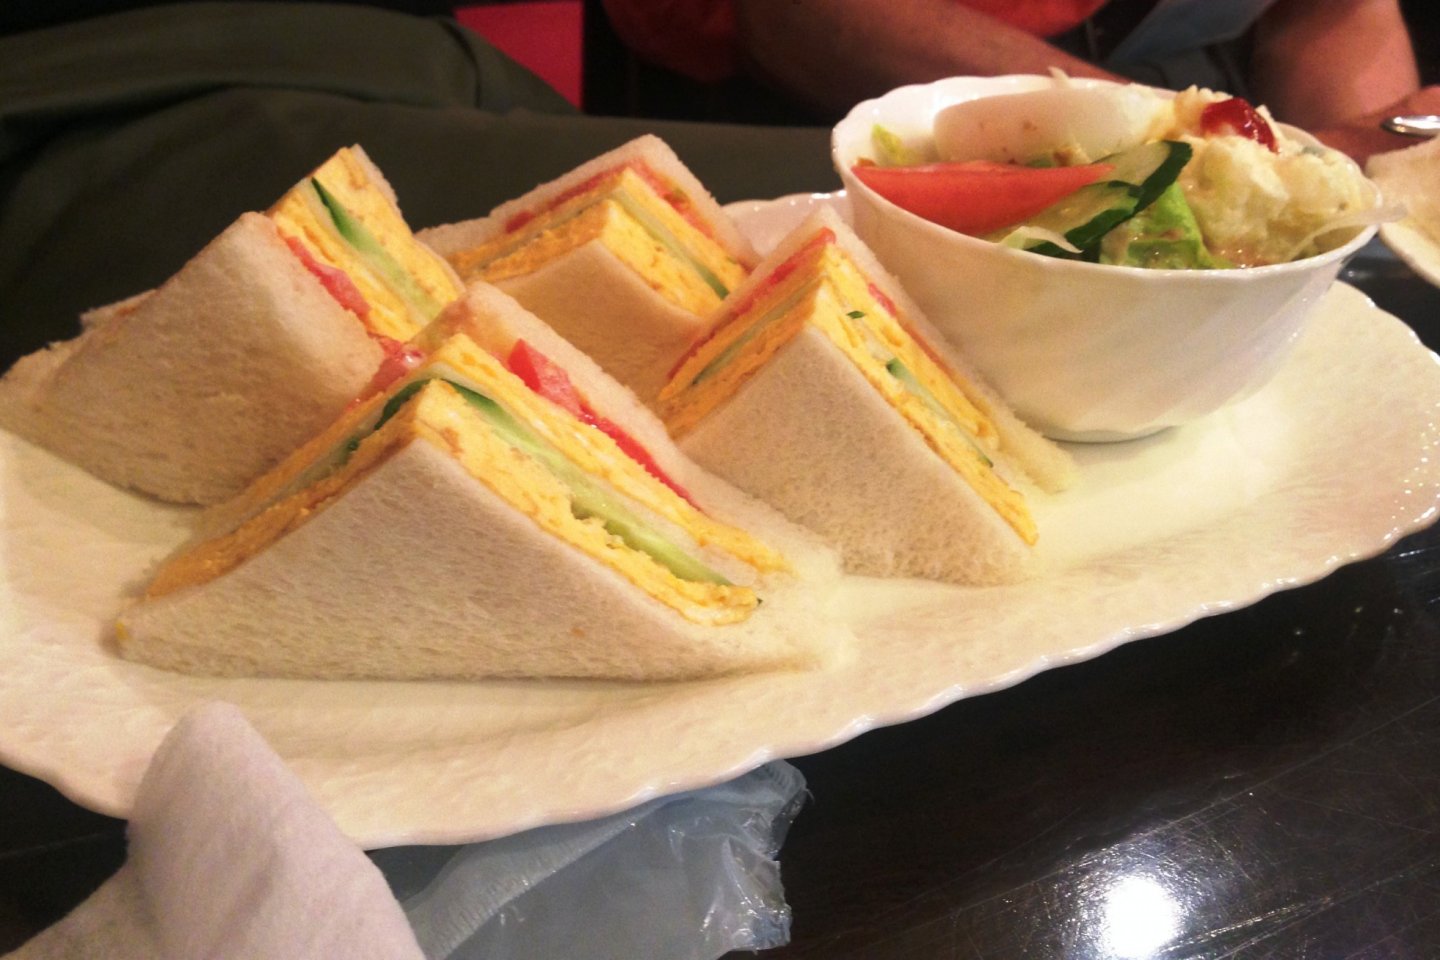 Sandwich gaya klub klasik dengan salad hijau. Perhatikan gaya presentasi tempo dulunya dengan roti putih dan tanpa kulit.